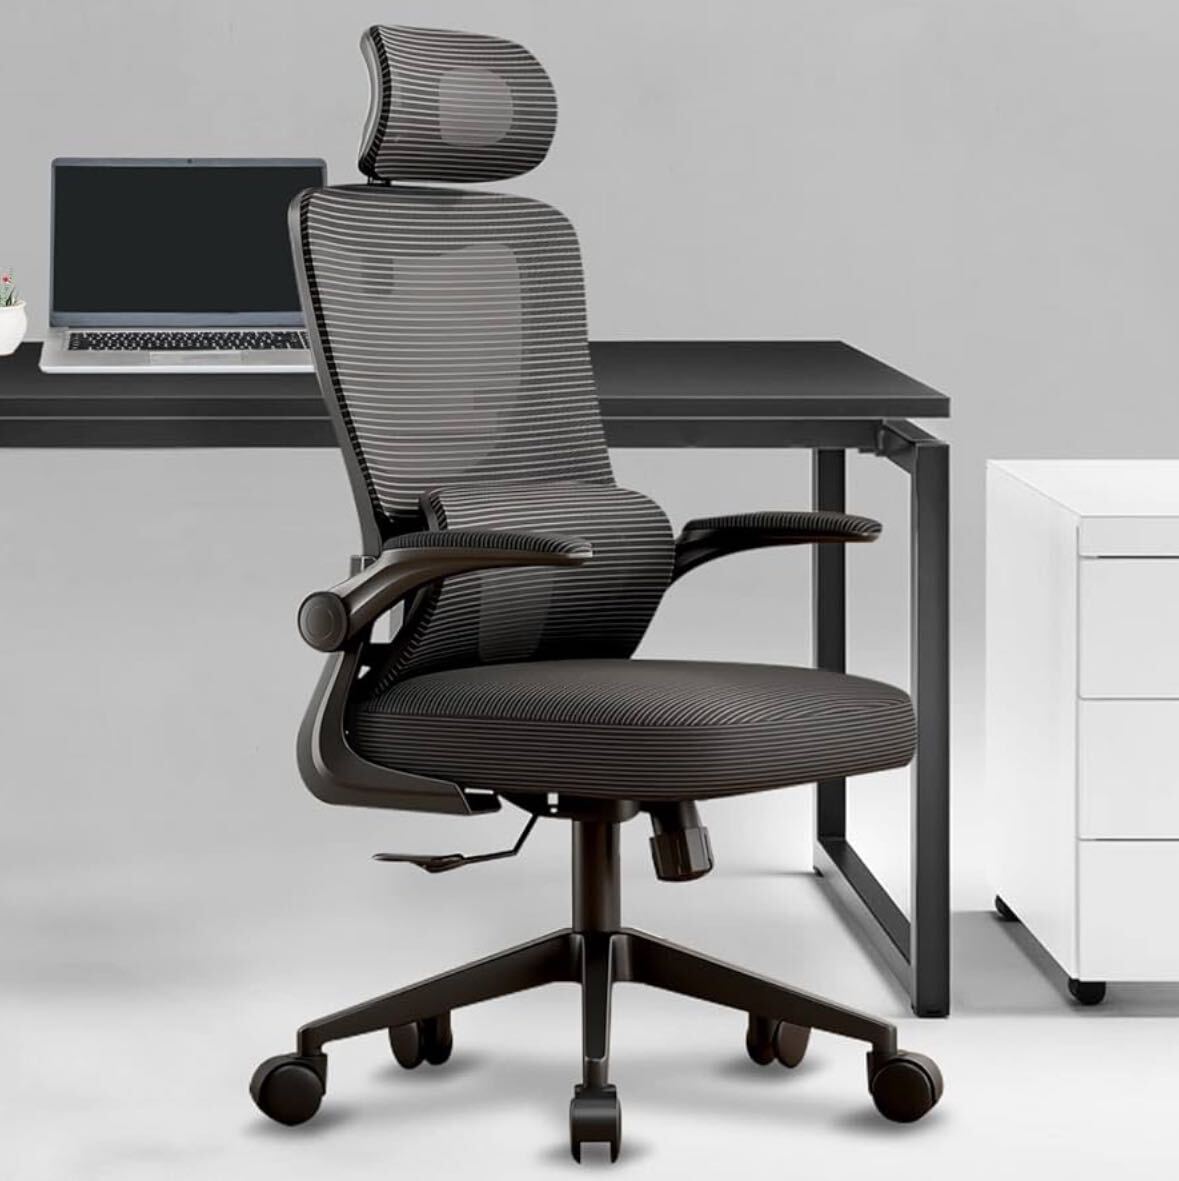 オフィスチェア メッシュ 椅子 テレワーク 疲れない デスクチェア 人間工学 リクライニング ロッキング S字立体背もたれ 跳ね上げ式、_画像1